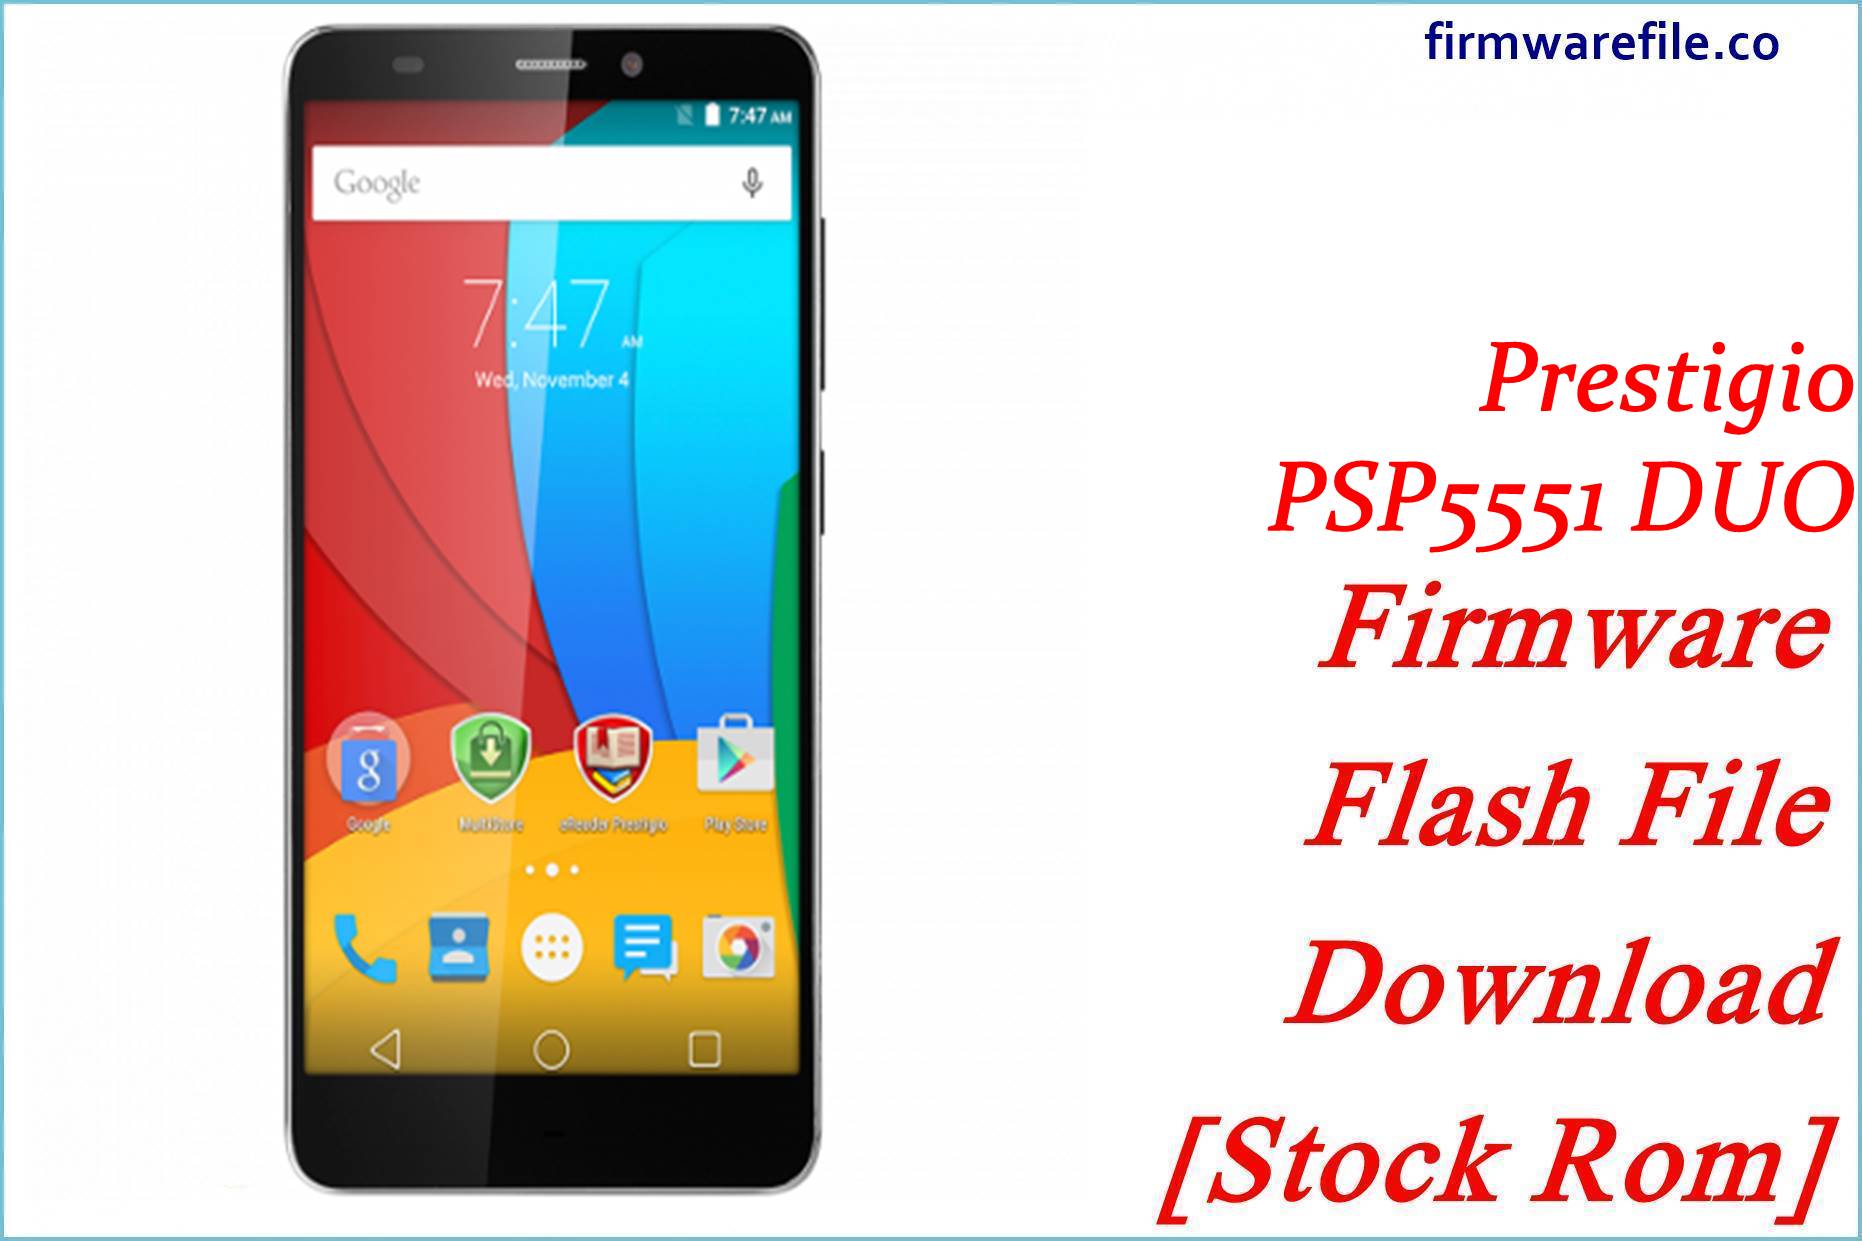 Prestigio PSP5551 DUO Firmware Flash File Download [Stock Rom]